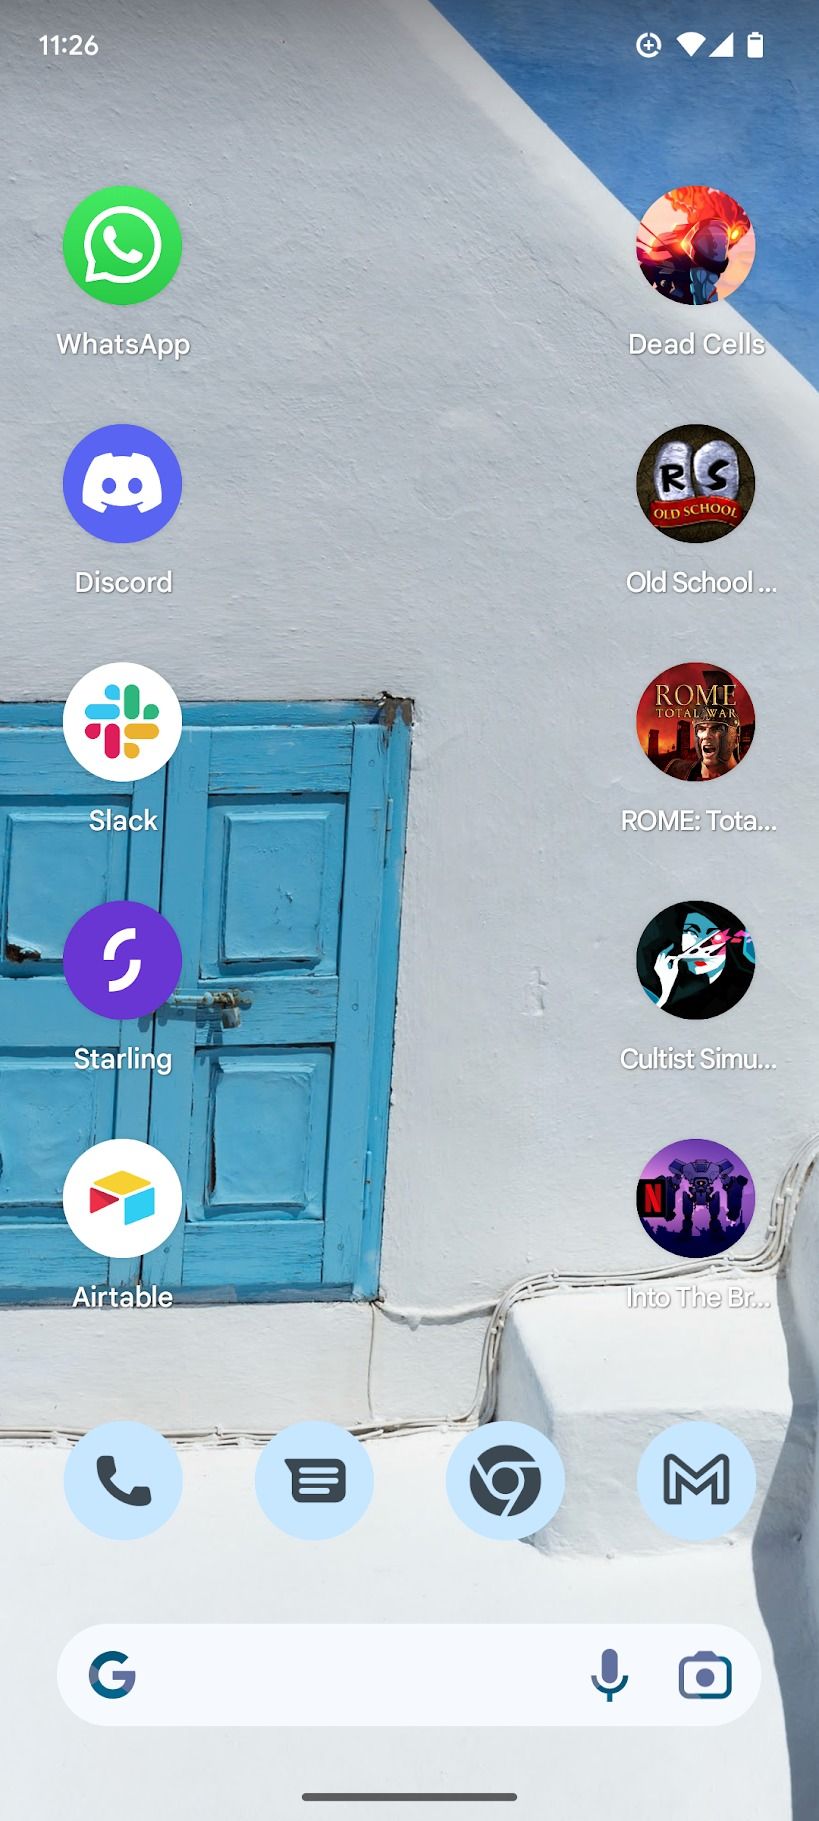 tela inicial do Android 13 mostrando vários aplicativos e jogos